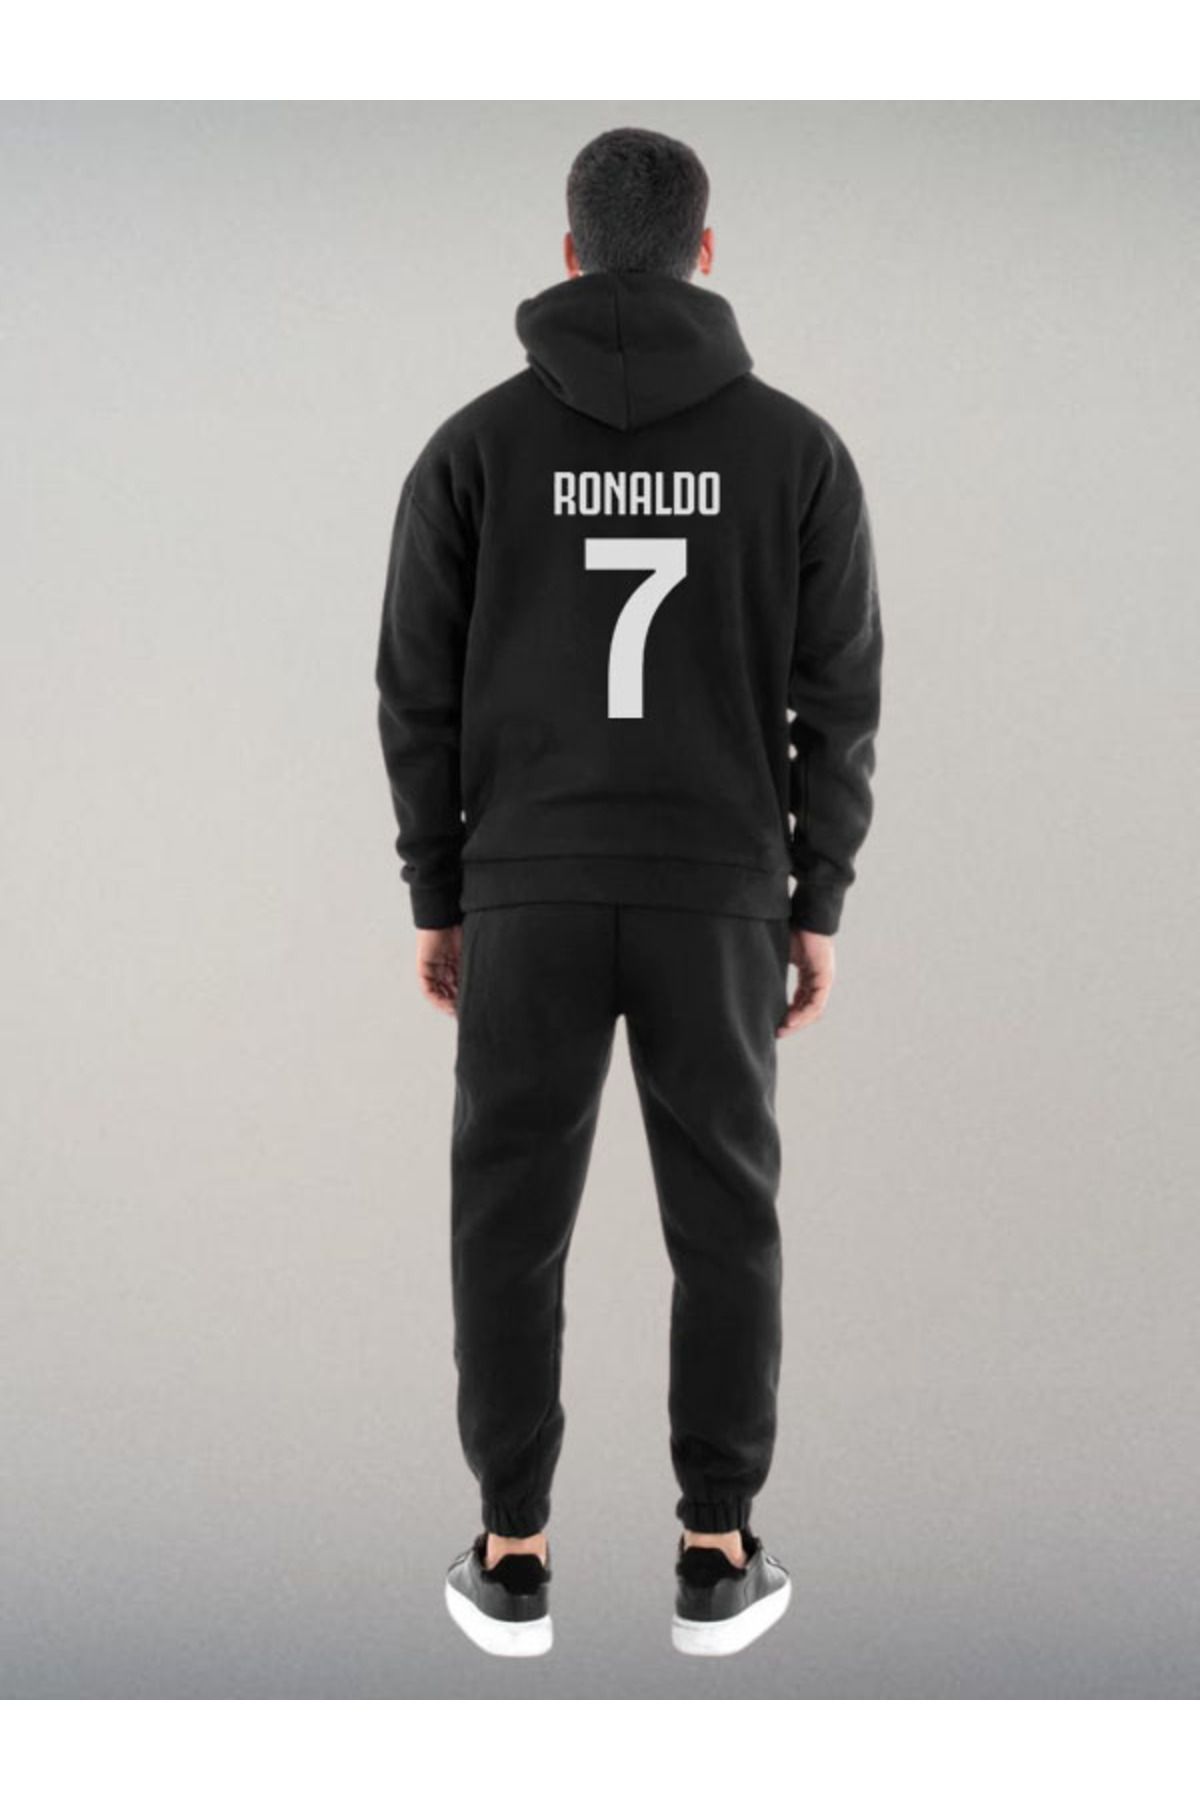 Darkia Cristiano Ronaldo Özel Tasarım Baskılı Kapşonlu Sweatshirt Hoodie Spor Eşofman Takımı